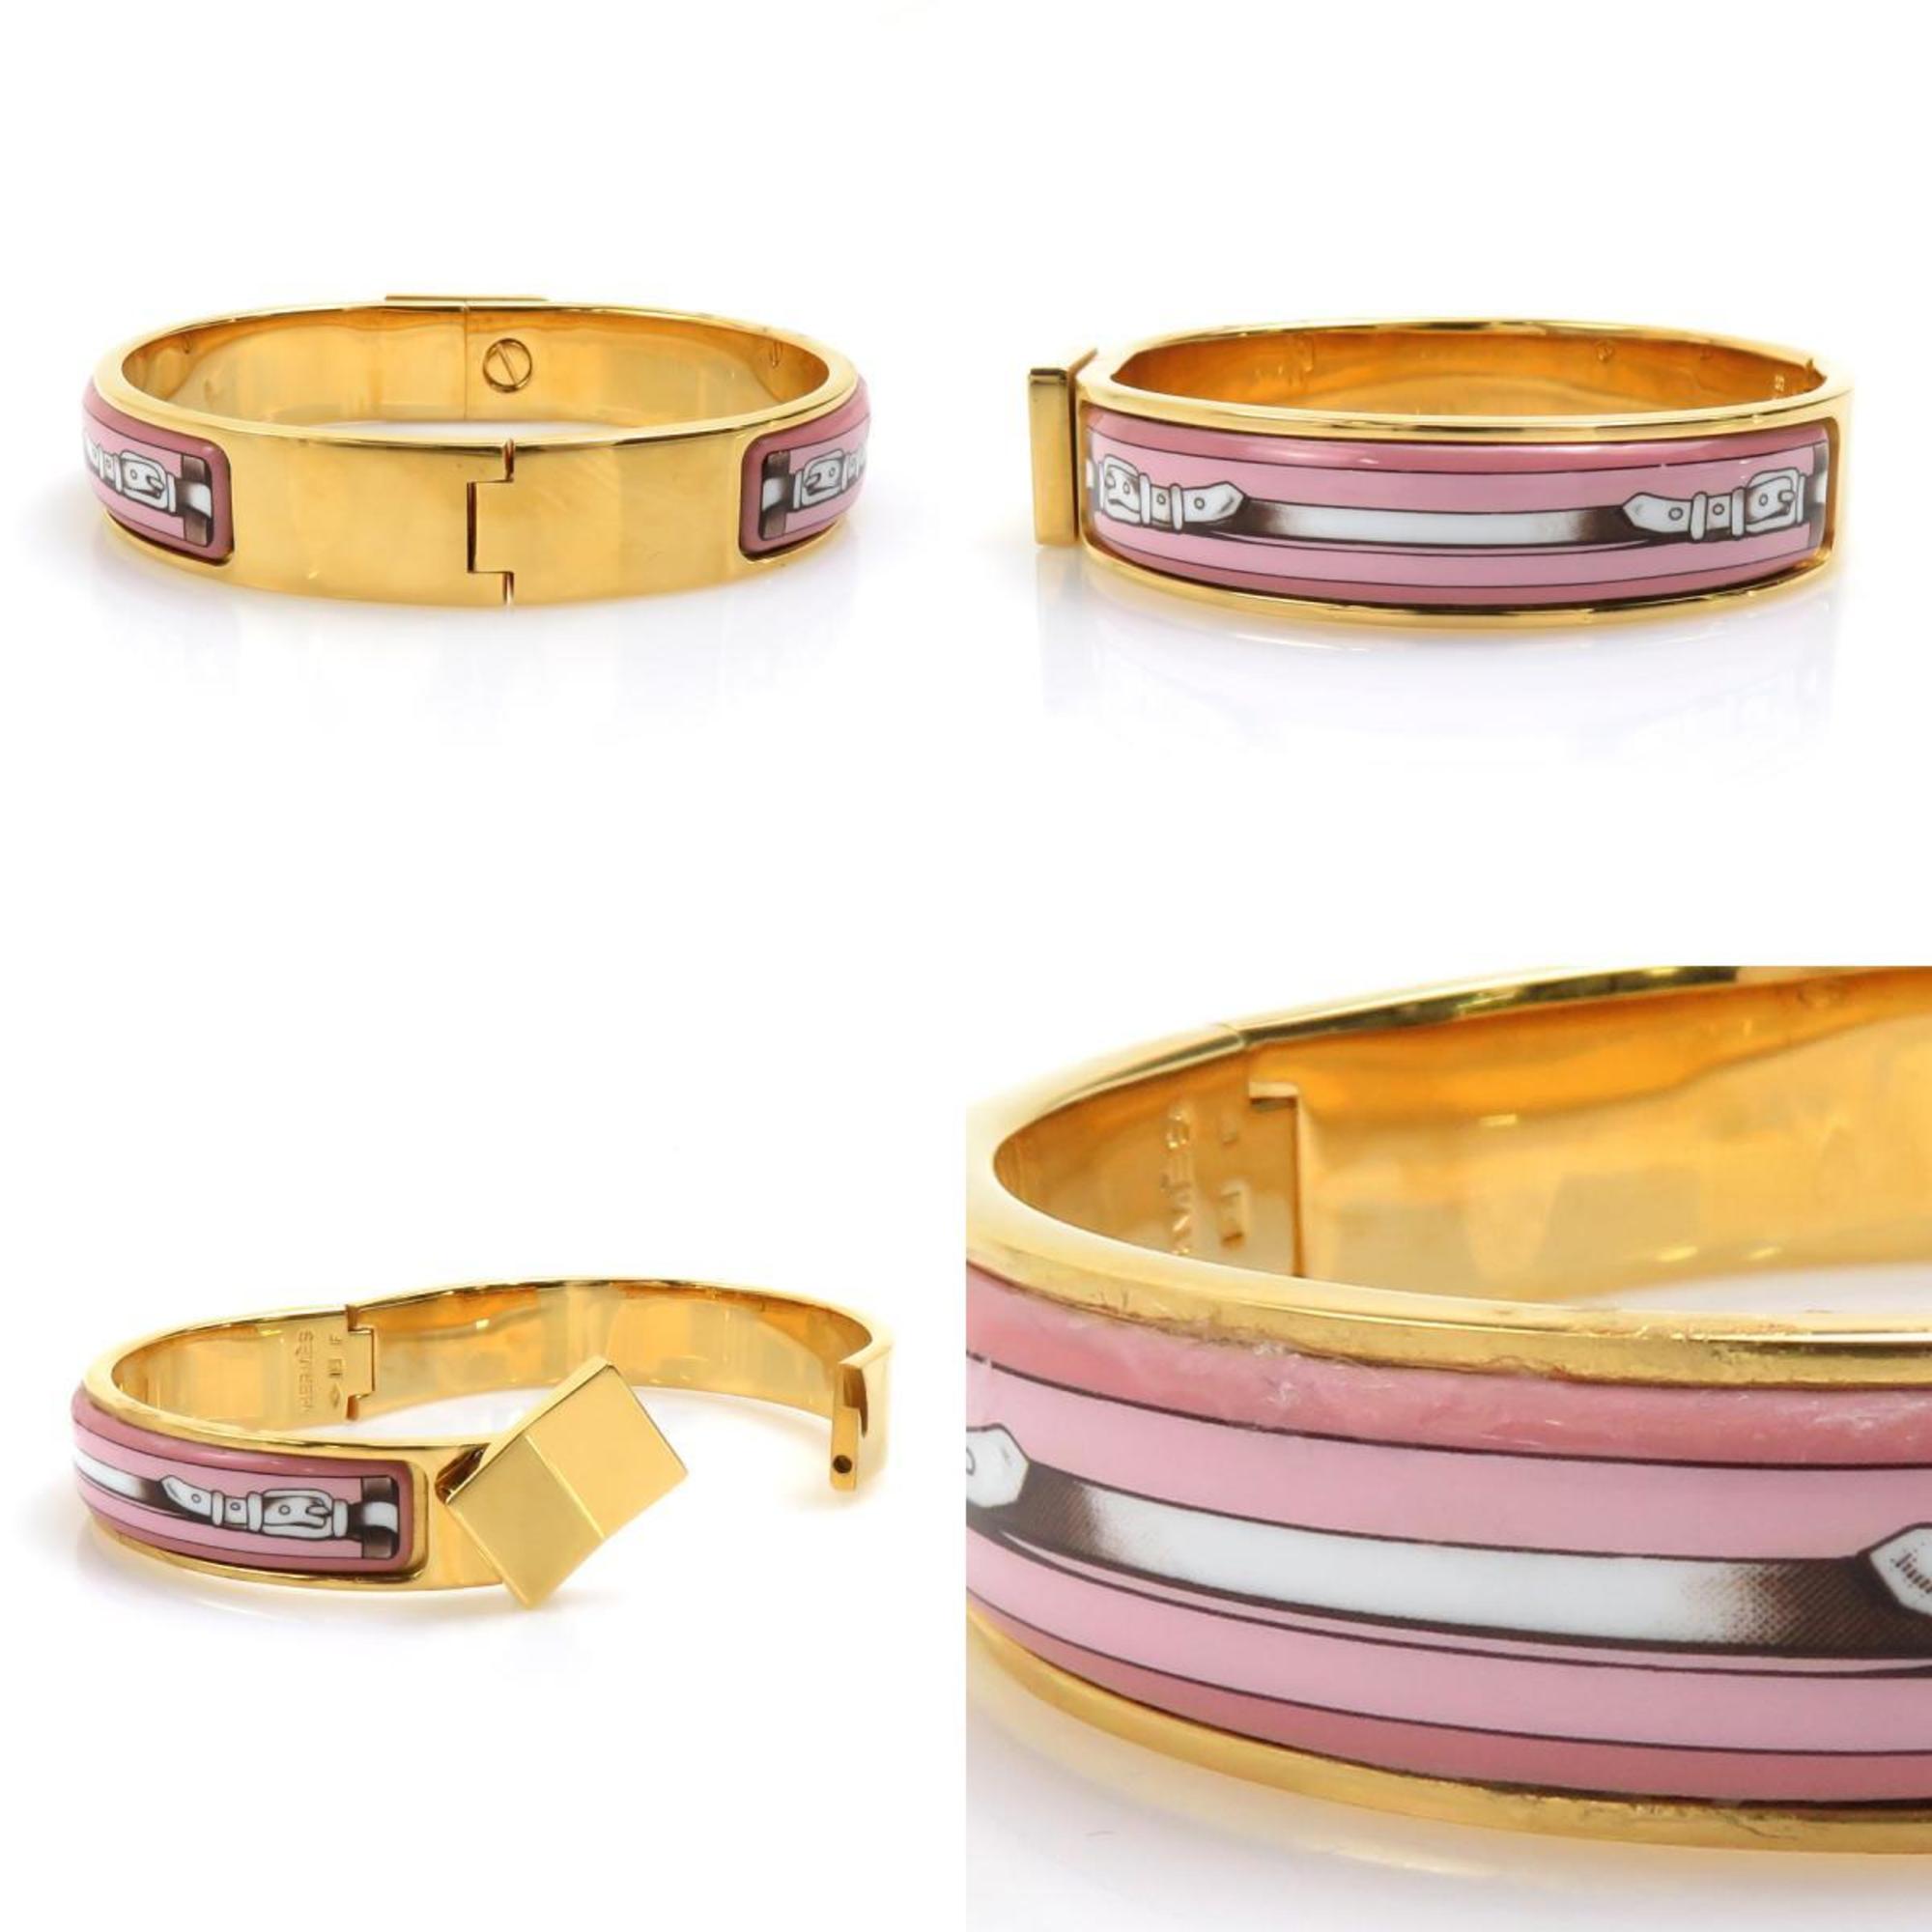 Hermes HERMES bangle bracelet click clack metal enamel pink gold ladies e58681a